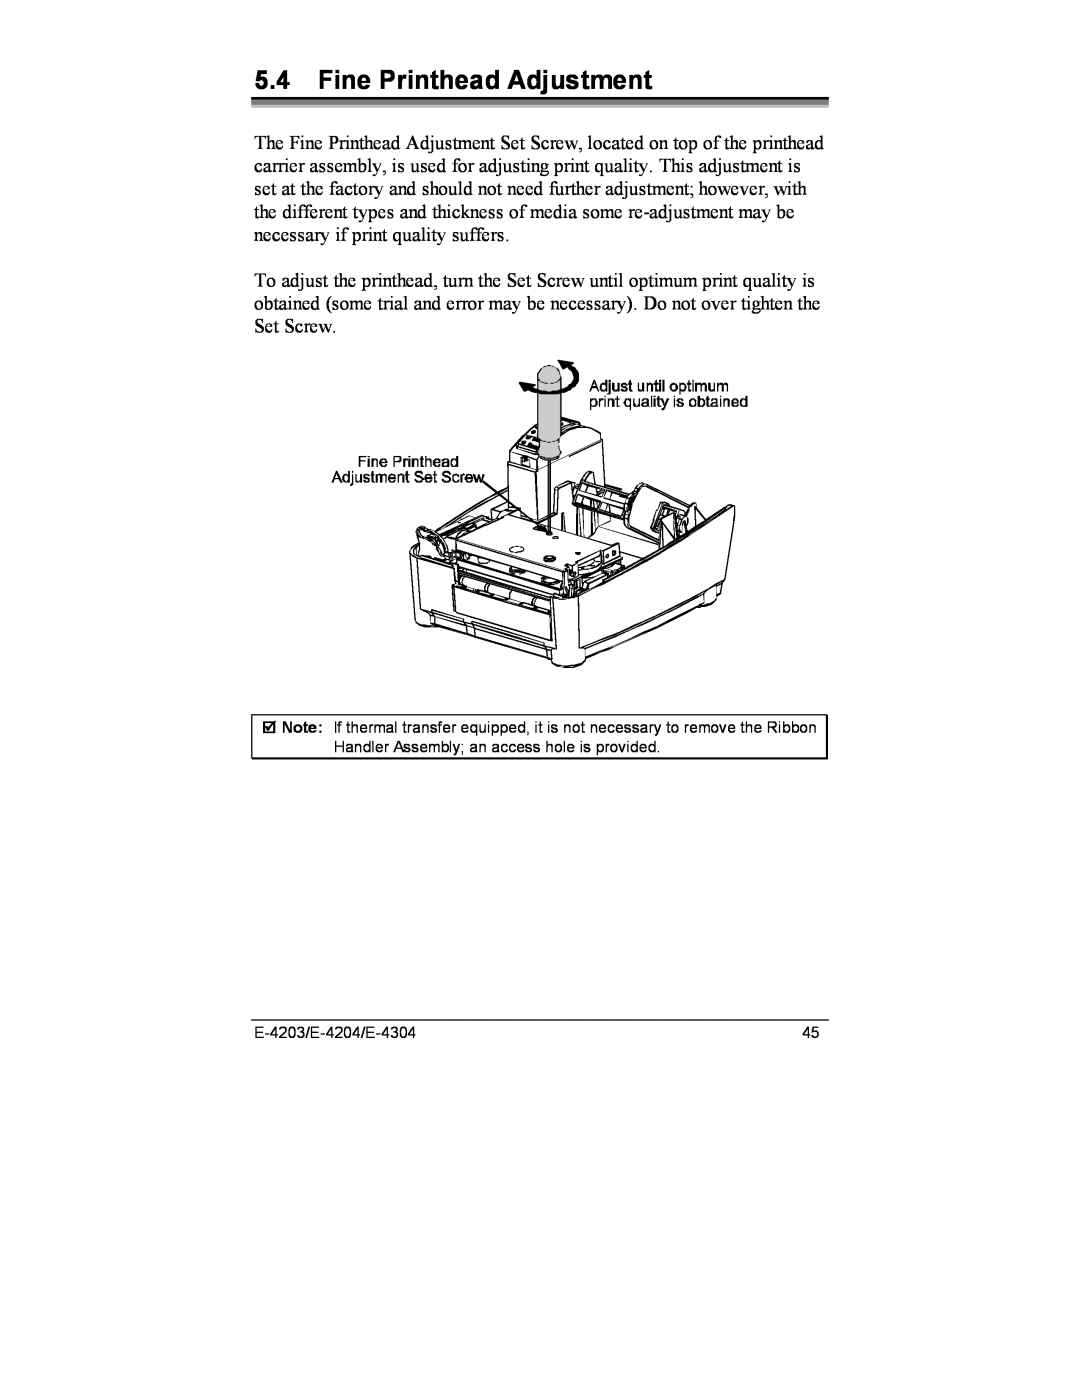 Datamax E-4204, E-4203, E-4304e manual Fine Printhead Adjustment 